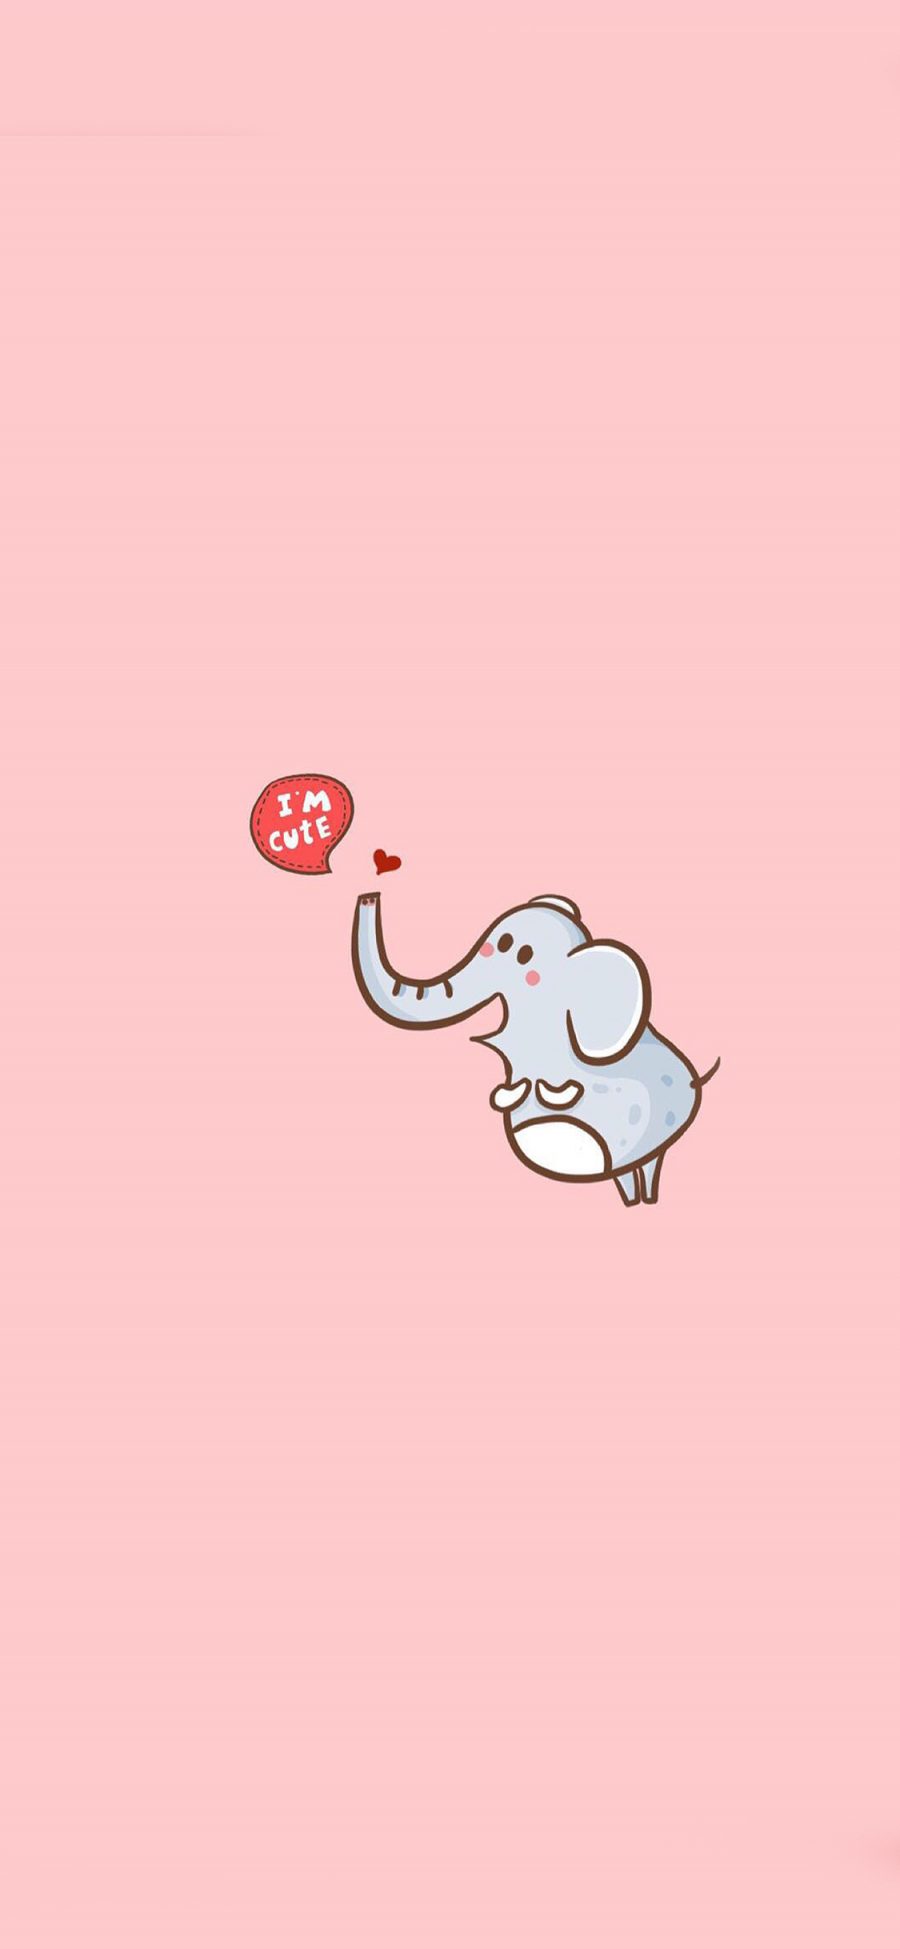 [2436×1125]大象 cute 可爱 手绘 苹果手机壁纸图片